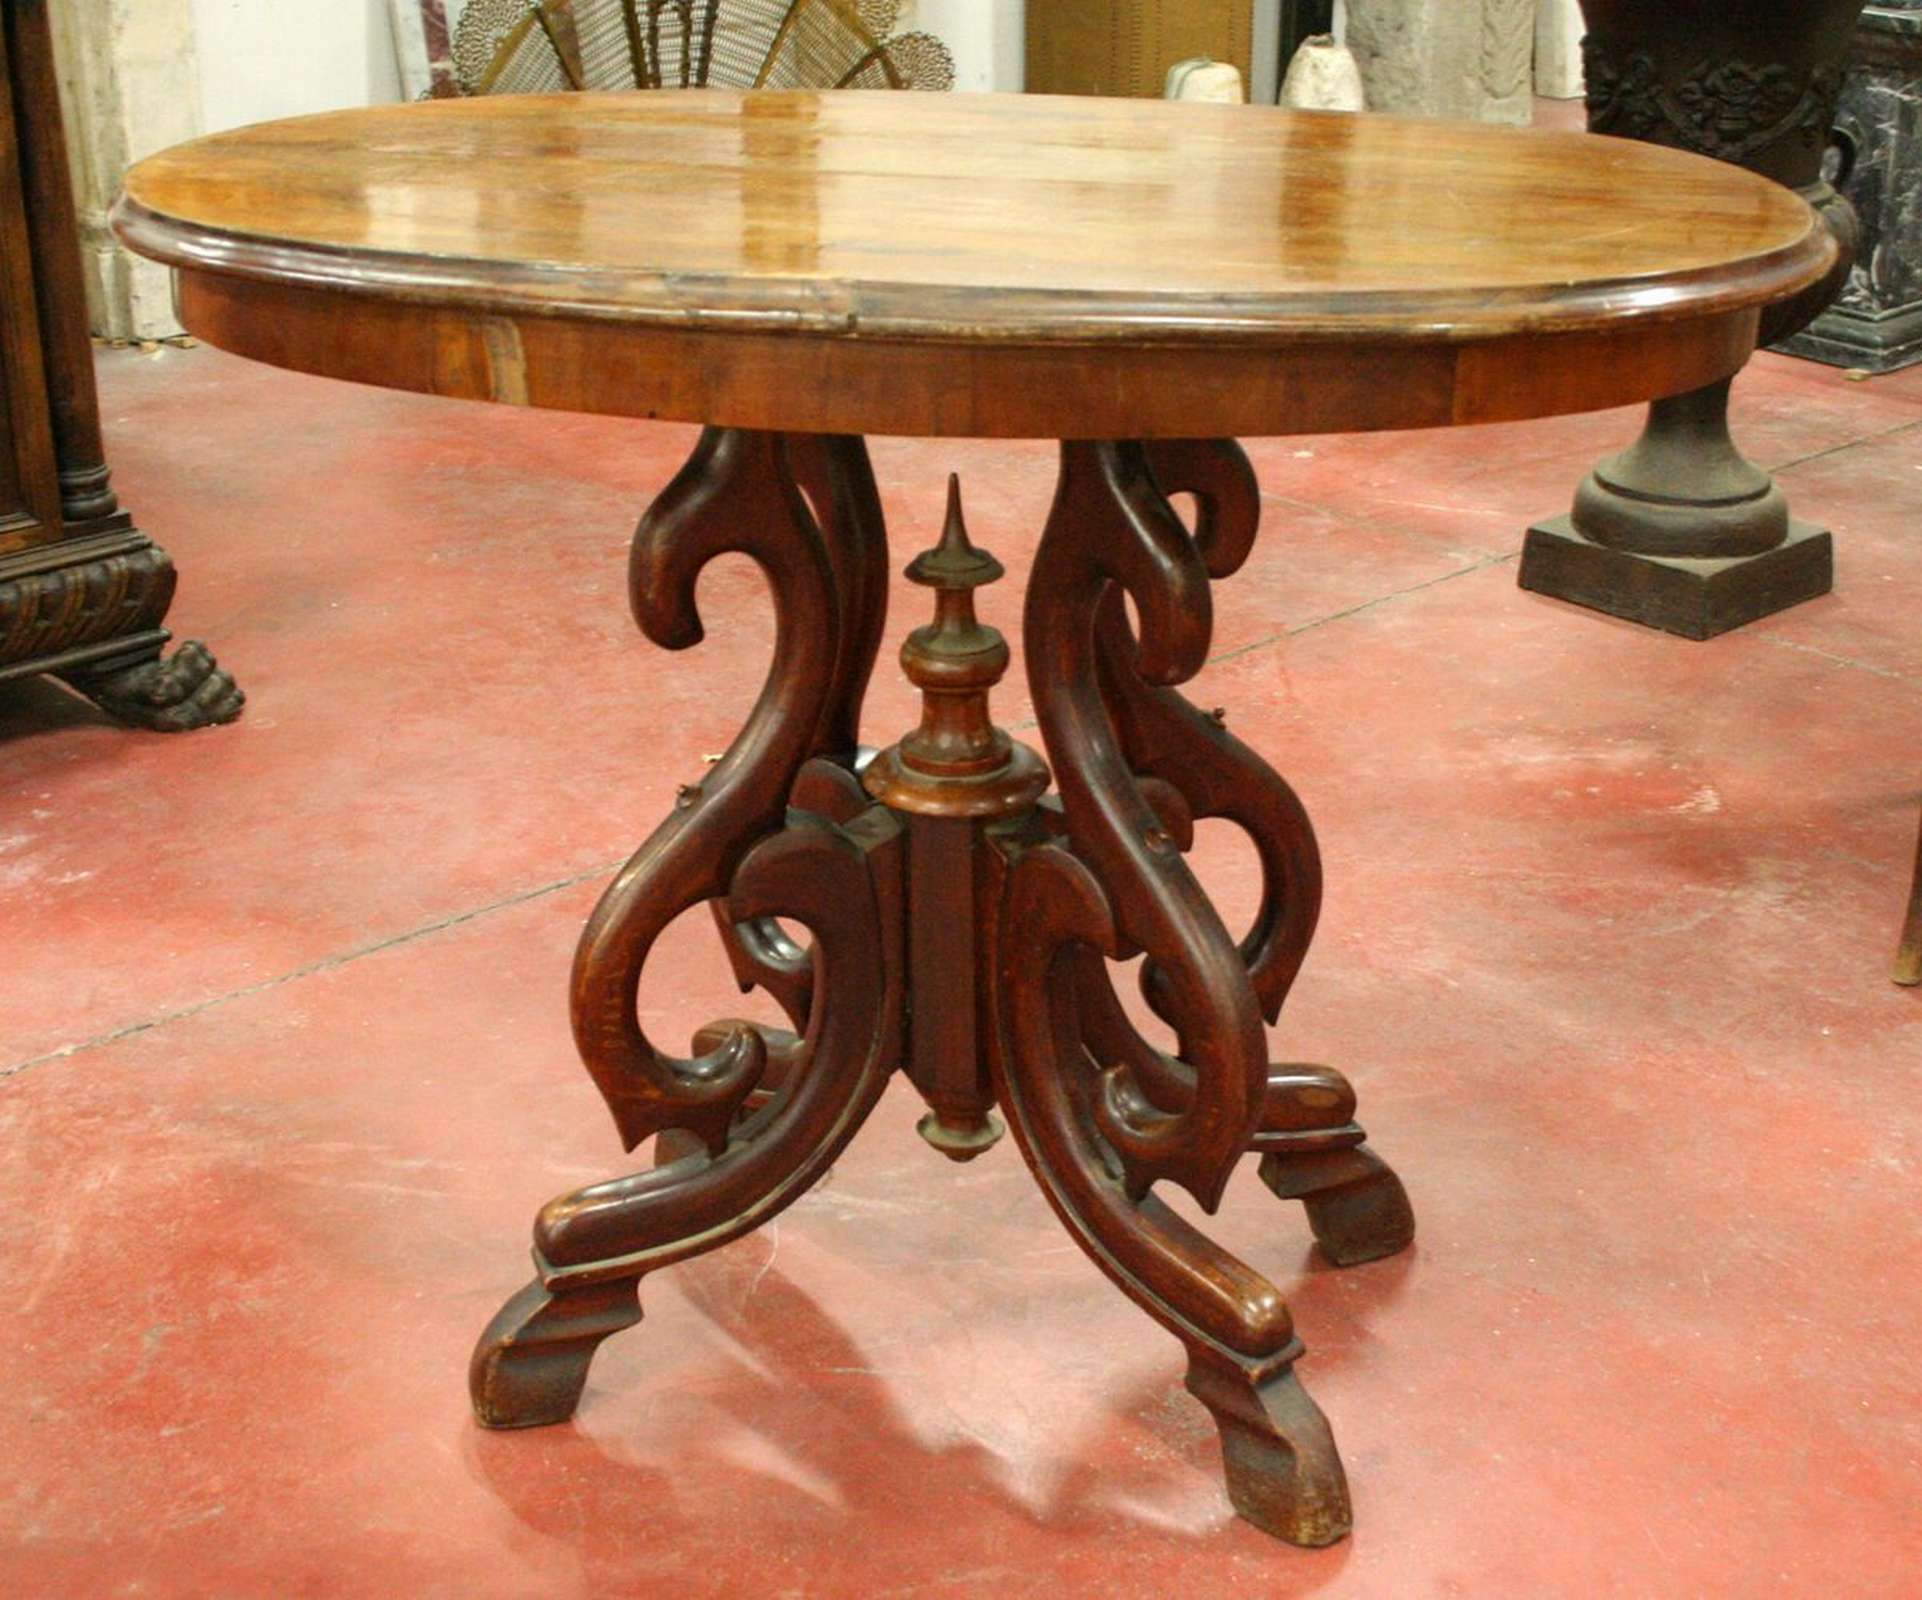 Tavolo antico in legno. Epoca primi 1900. - Tavoli in legno - Tavoli e complementi - Prodotti - Antichità Fiorillo